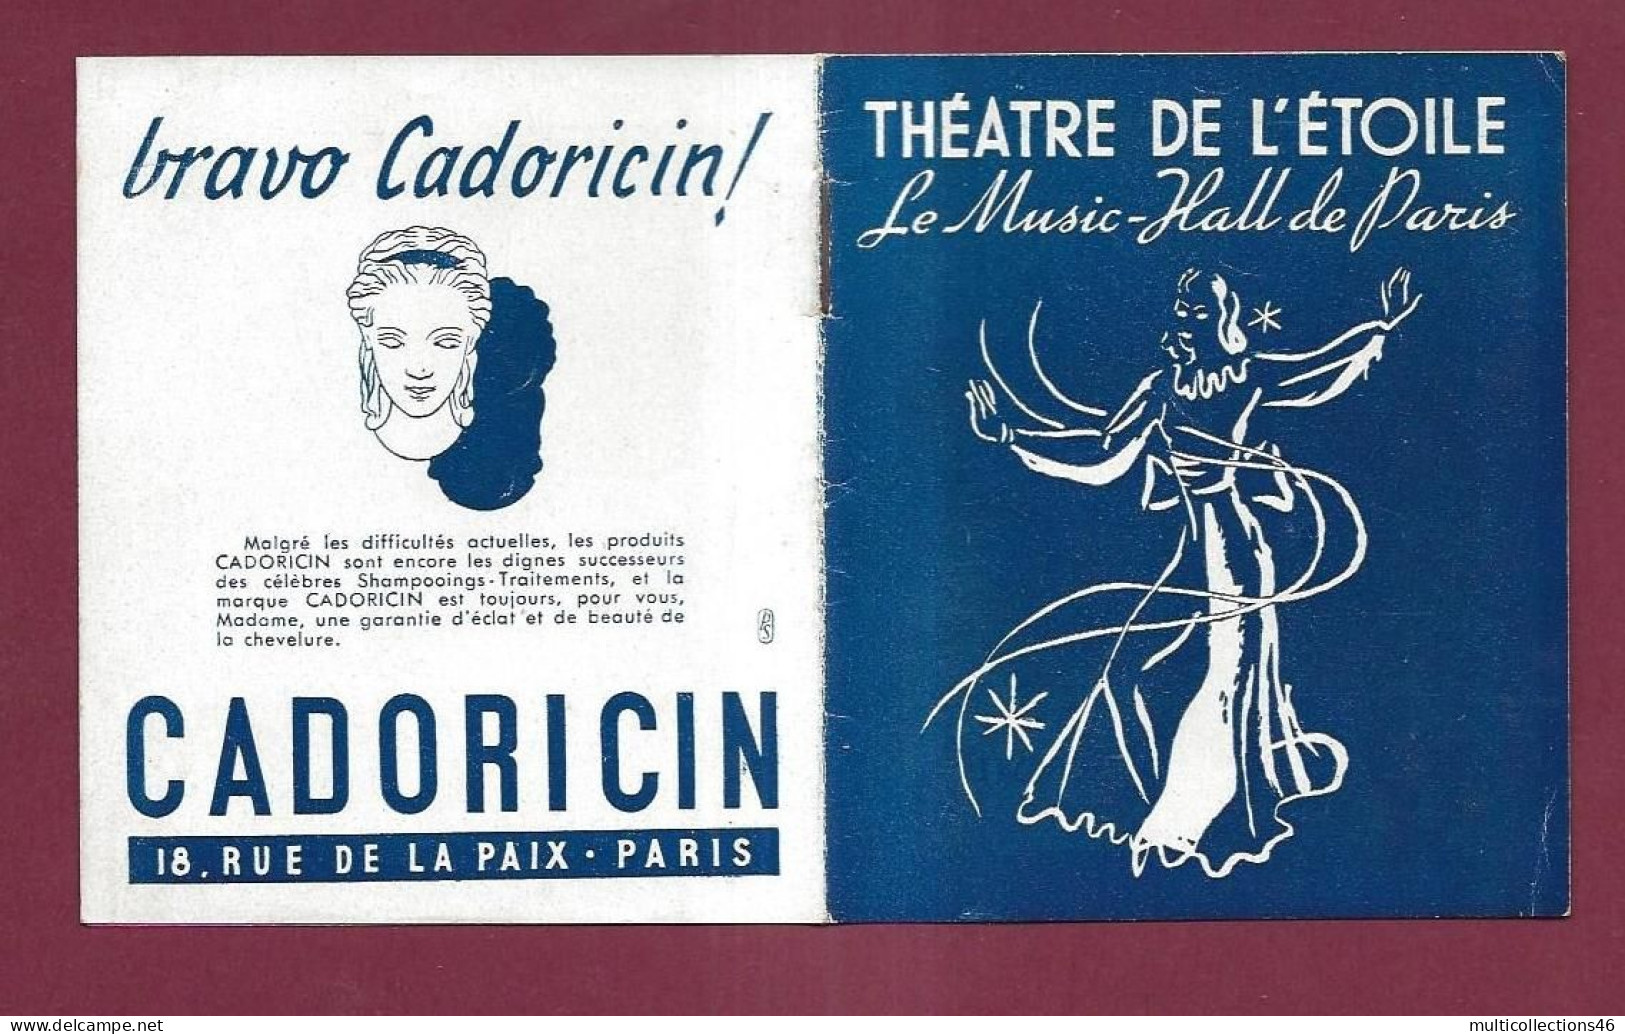 150524A - PROGRAMME THEATRE DE L'ETOILE - Music Hall 1945 46 EDITH PIAF Orchestre Etoile Acrobate Les Bel Air - Programme